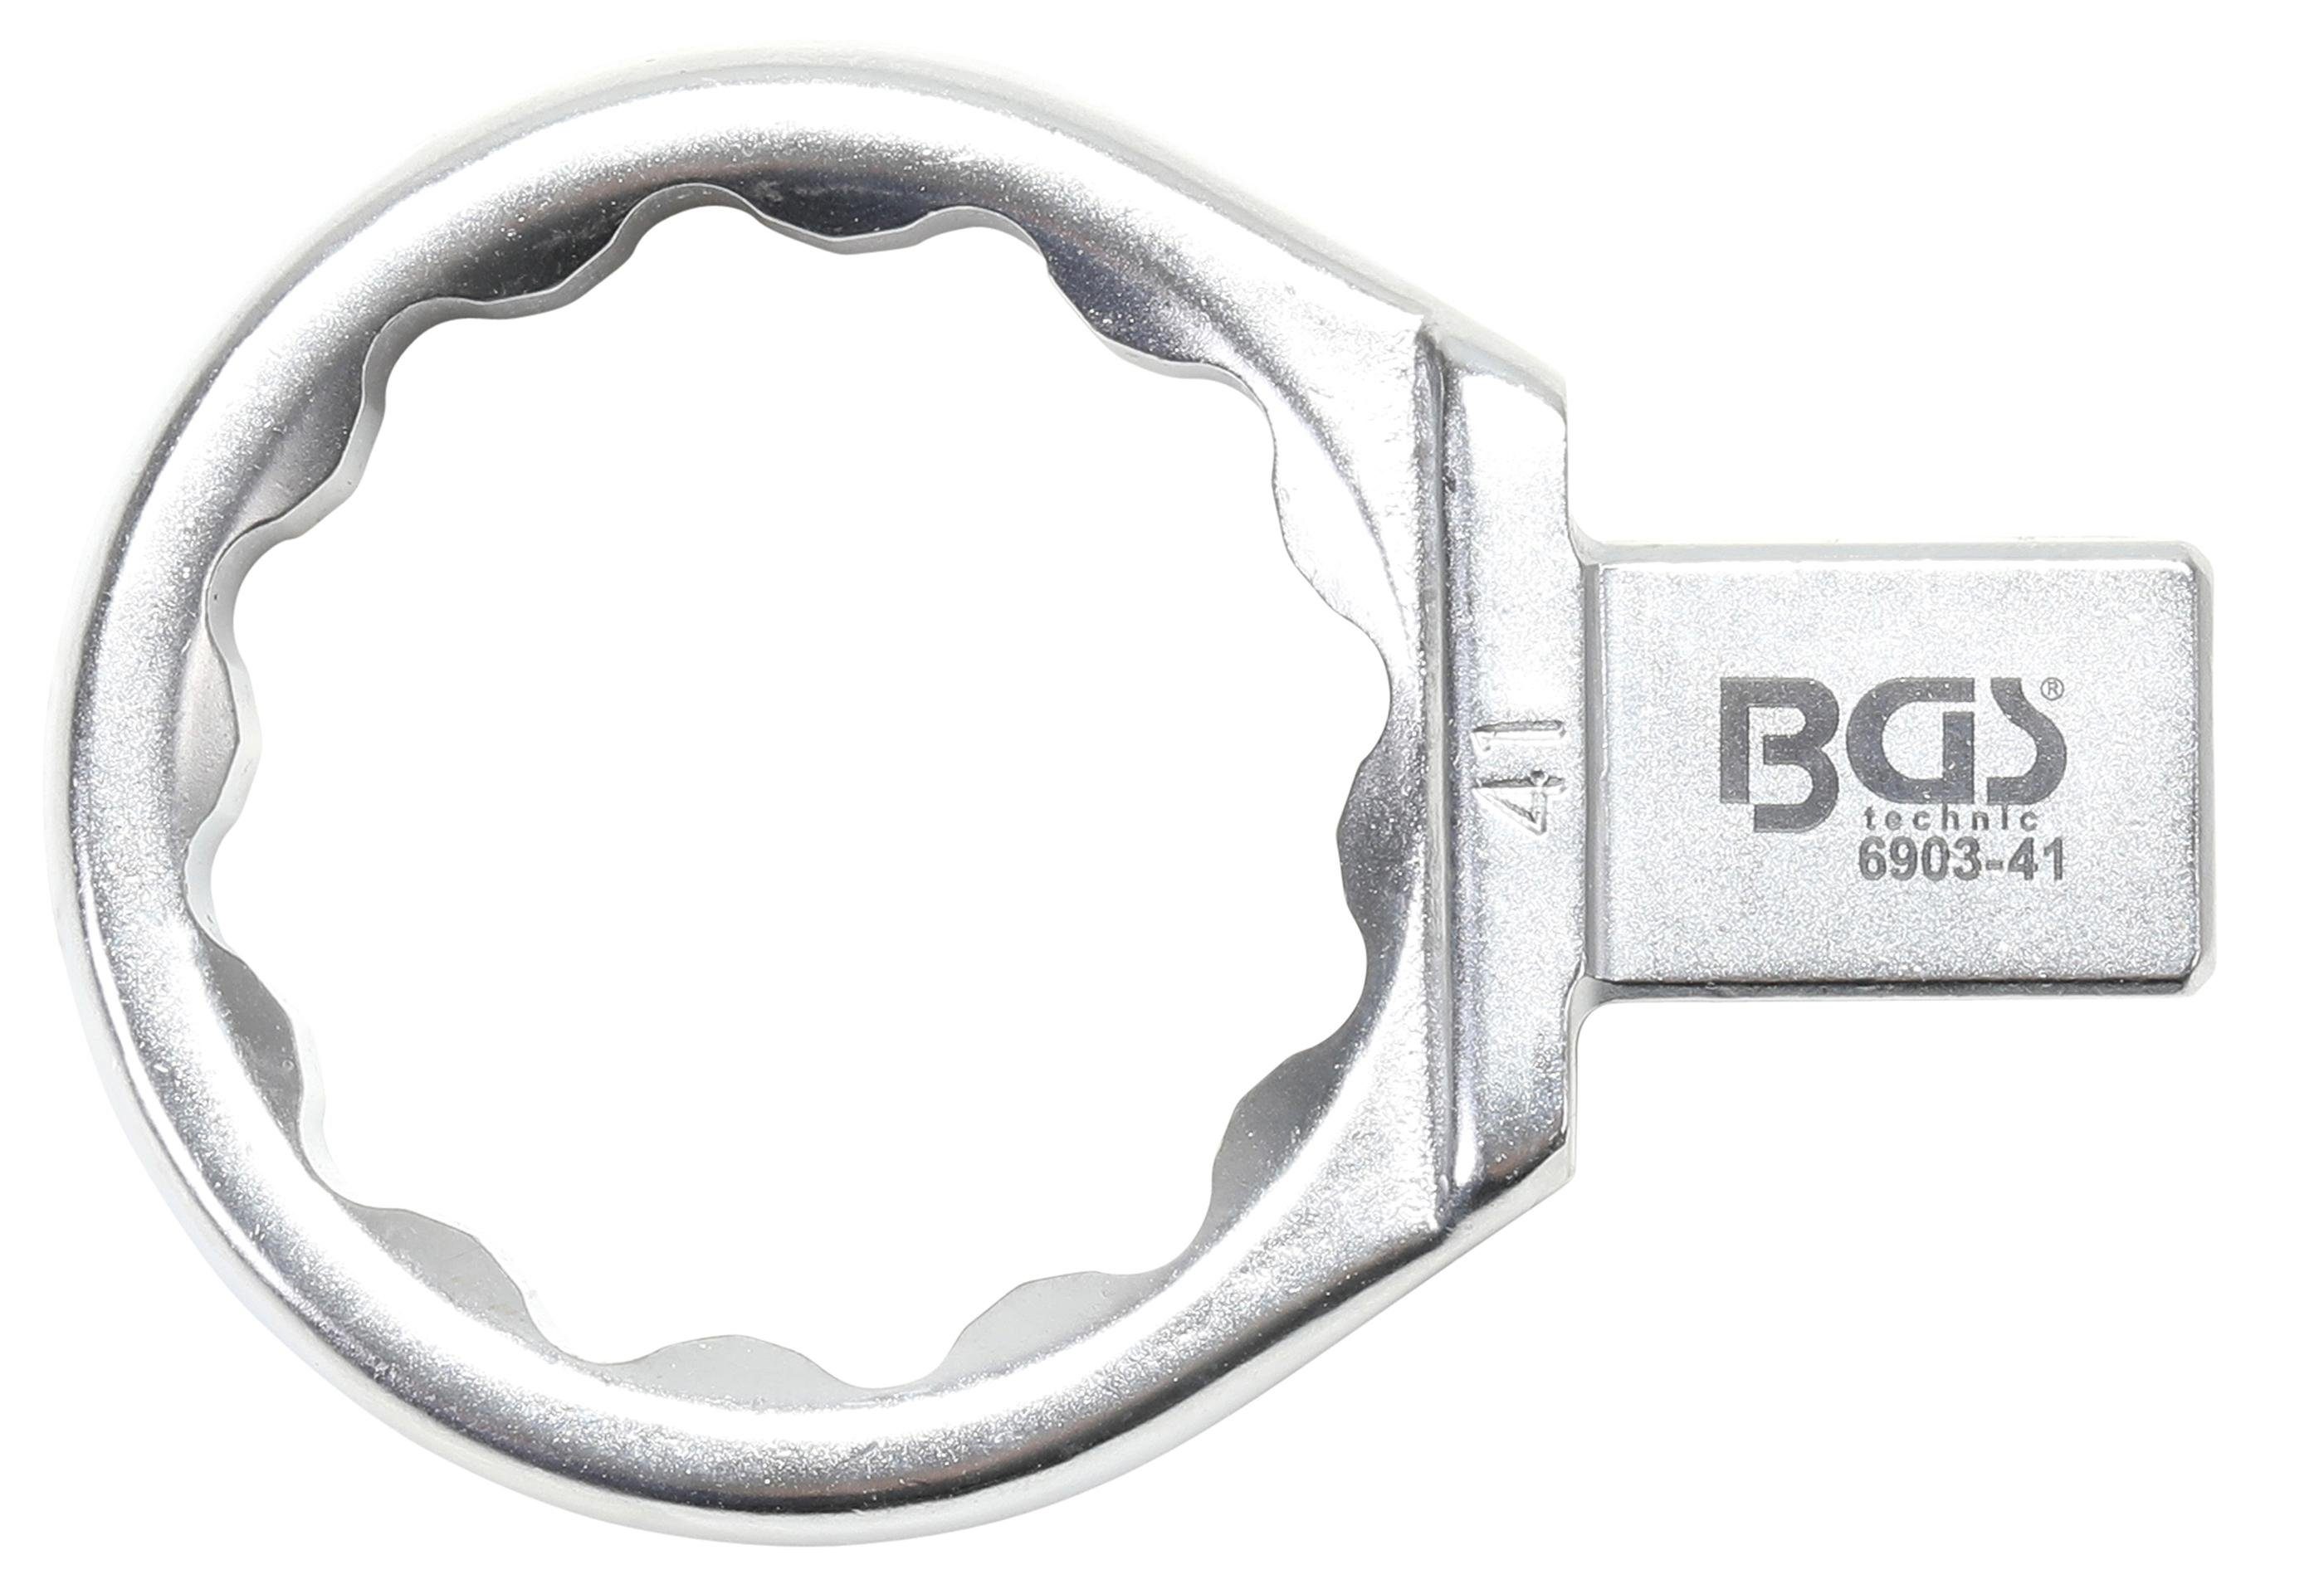 BGS technic Ausstechform Einsteck-Ringschlüssel, 41 mm, Aufnahme 14 x 18 mm | Ausstechformen